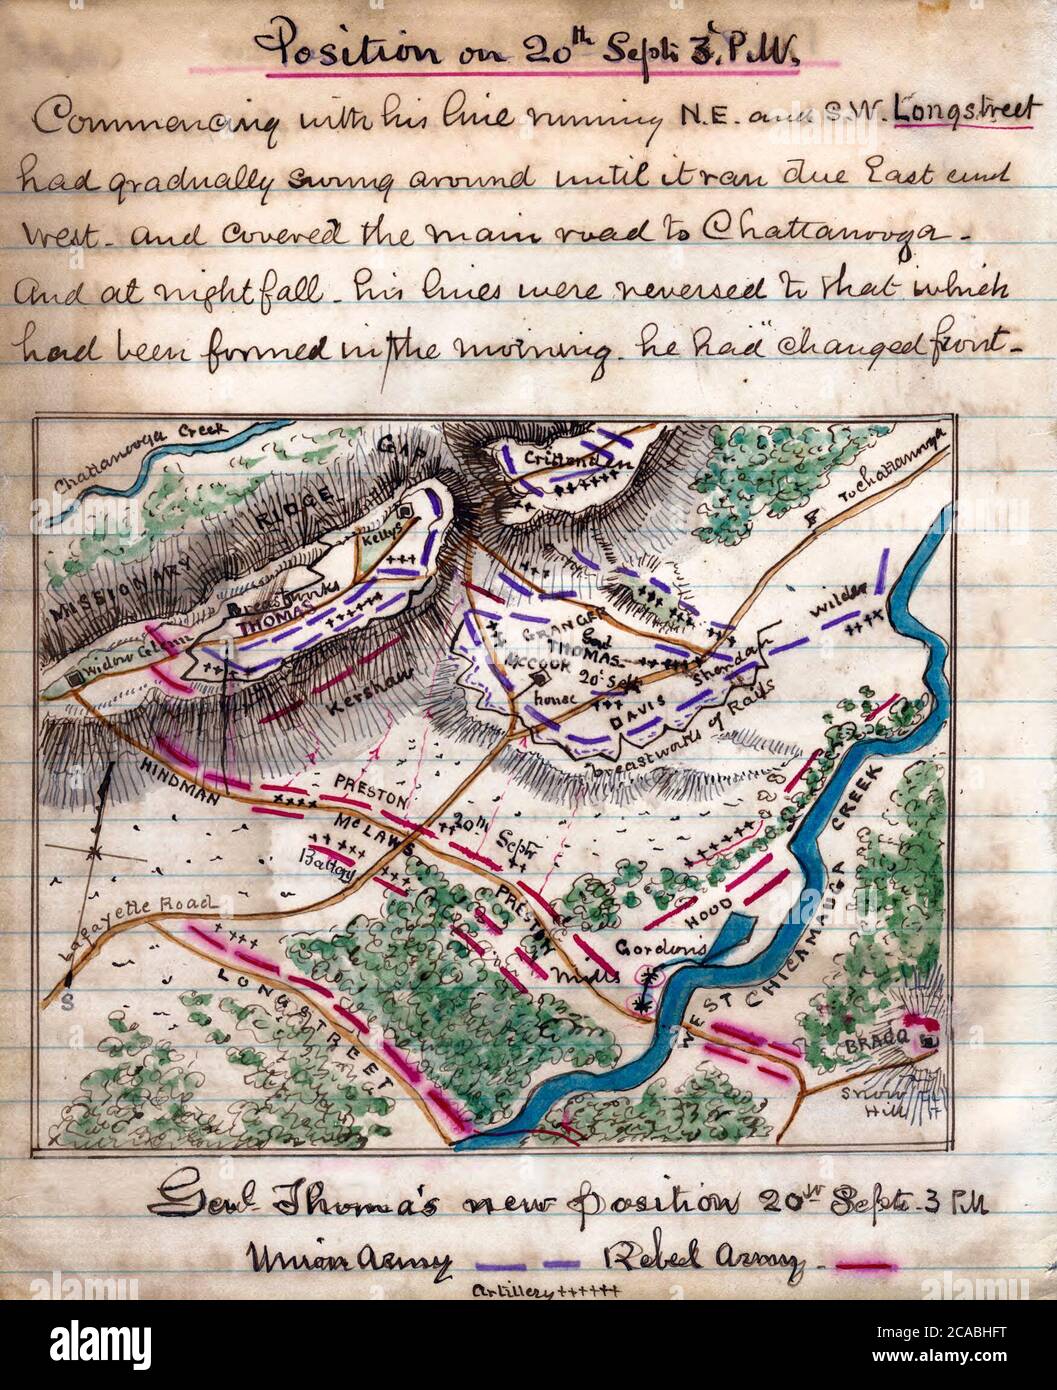 Nouvelle position du général Thomas le 20 septembre 3 h - la carte montre l'emplacement des troupes de l'Union et de la Confédération entre la crête Missionnaire et le ruisseau West Chickamauga. Après que les confédérés aient réussi à briser les lignes de l'Union, la majorité des forces de l'Union se sont retirées vers Chattanooga. Le général de l'Union George H. Thomas et ses hommes se sont maintenus dans une position précaire sur Snodgrass Hill et ont repoussé l'assaut après l'assaut. Bataille de Chickamauga - guerre civile aux États-Unis Banque D'Images